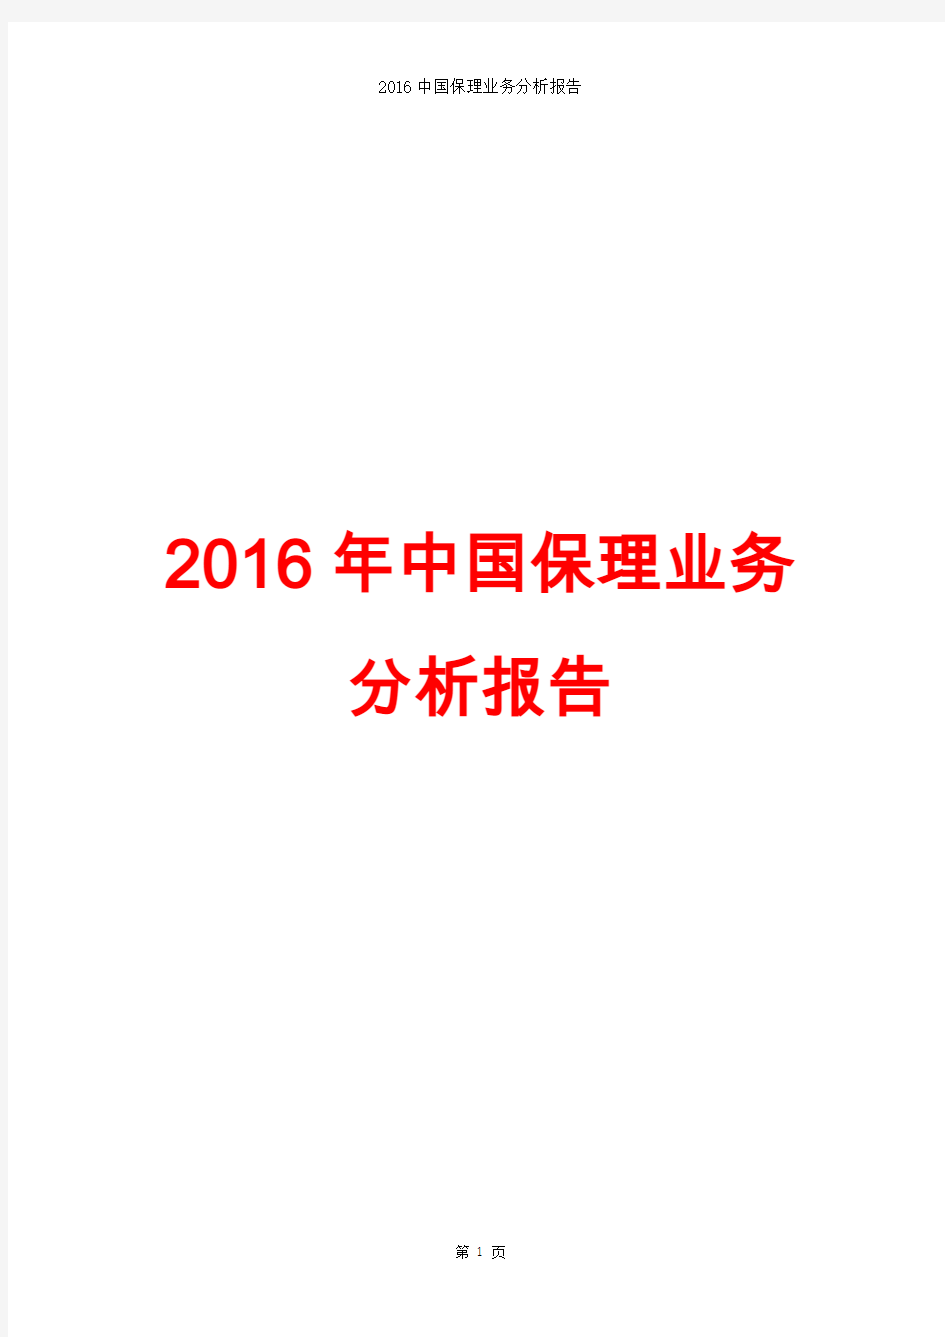 2016中国保理业务分析报告